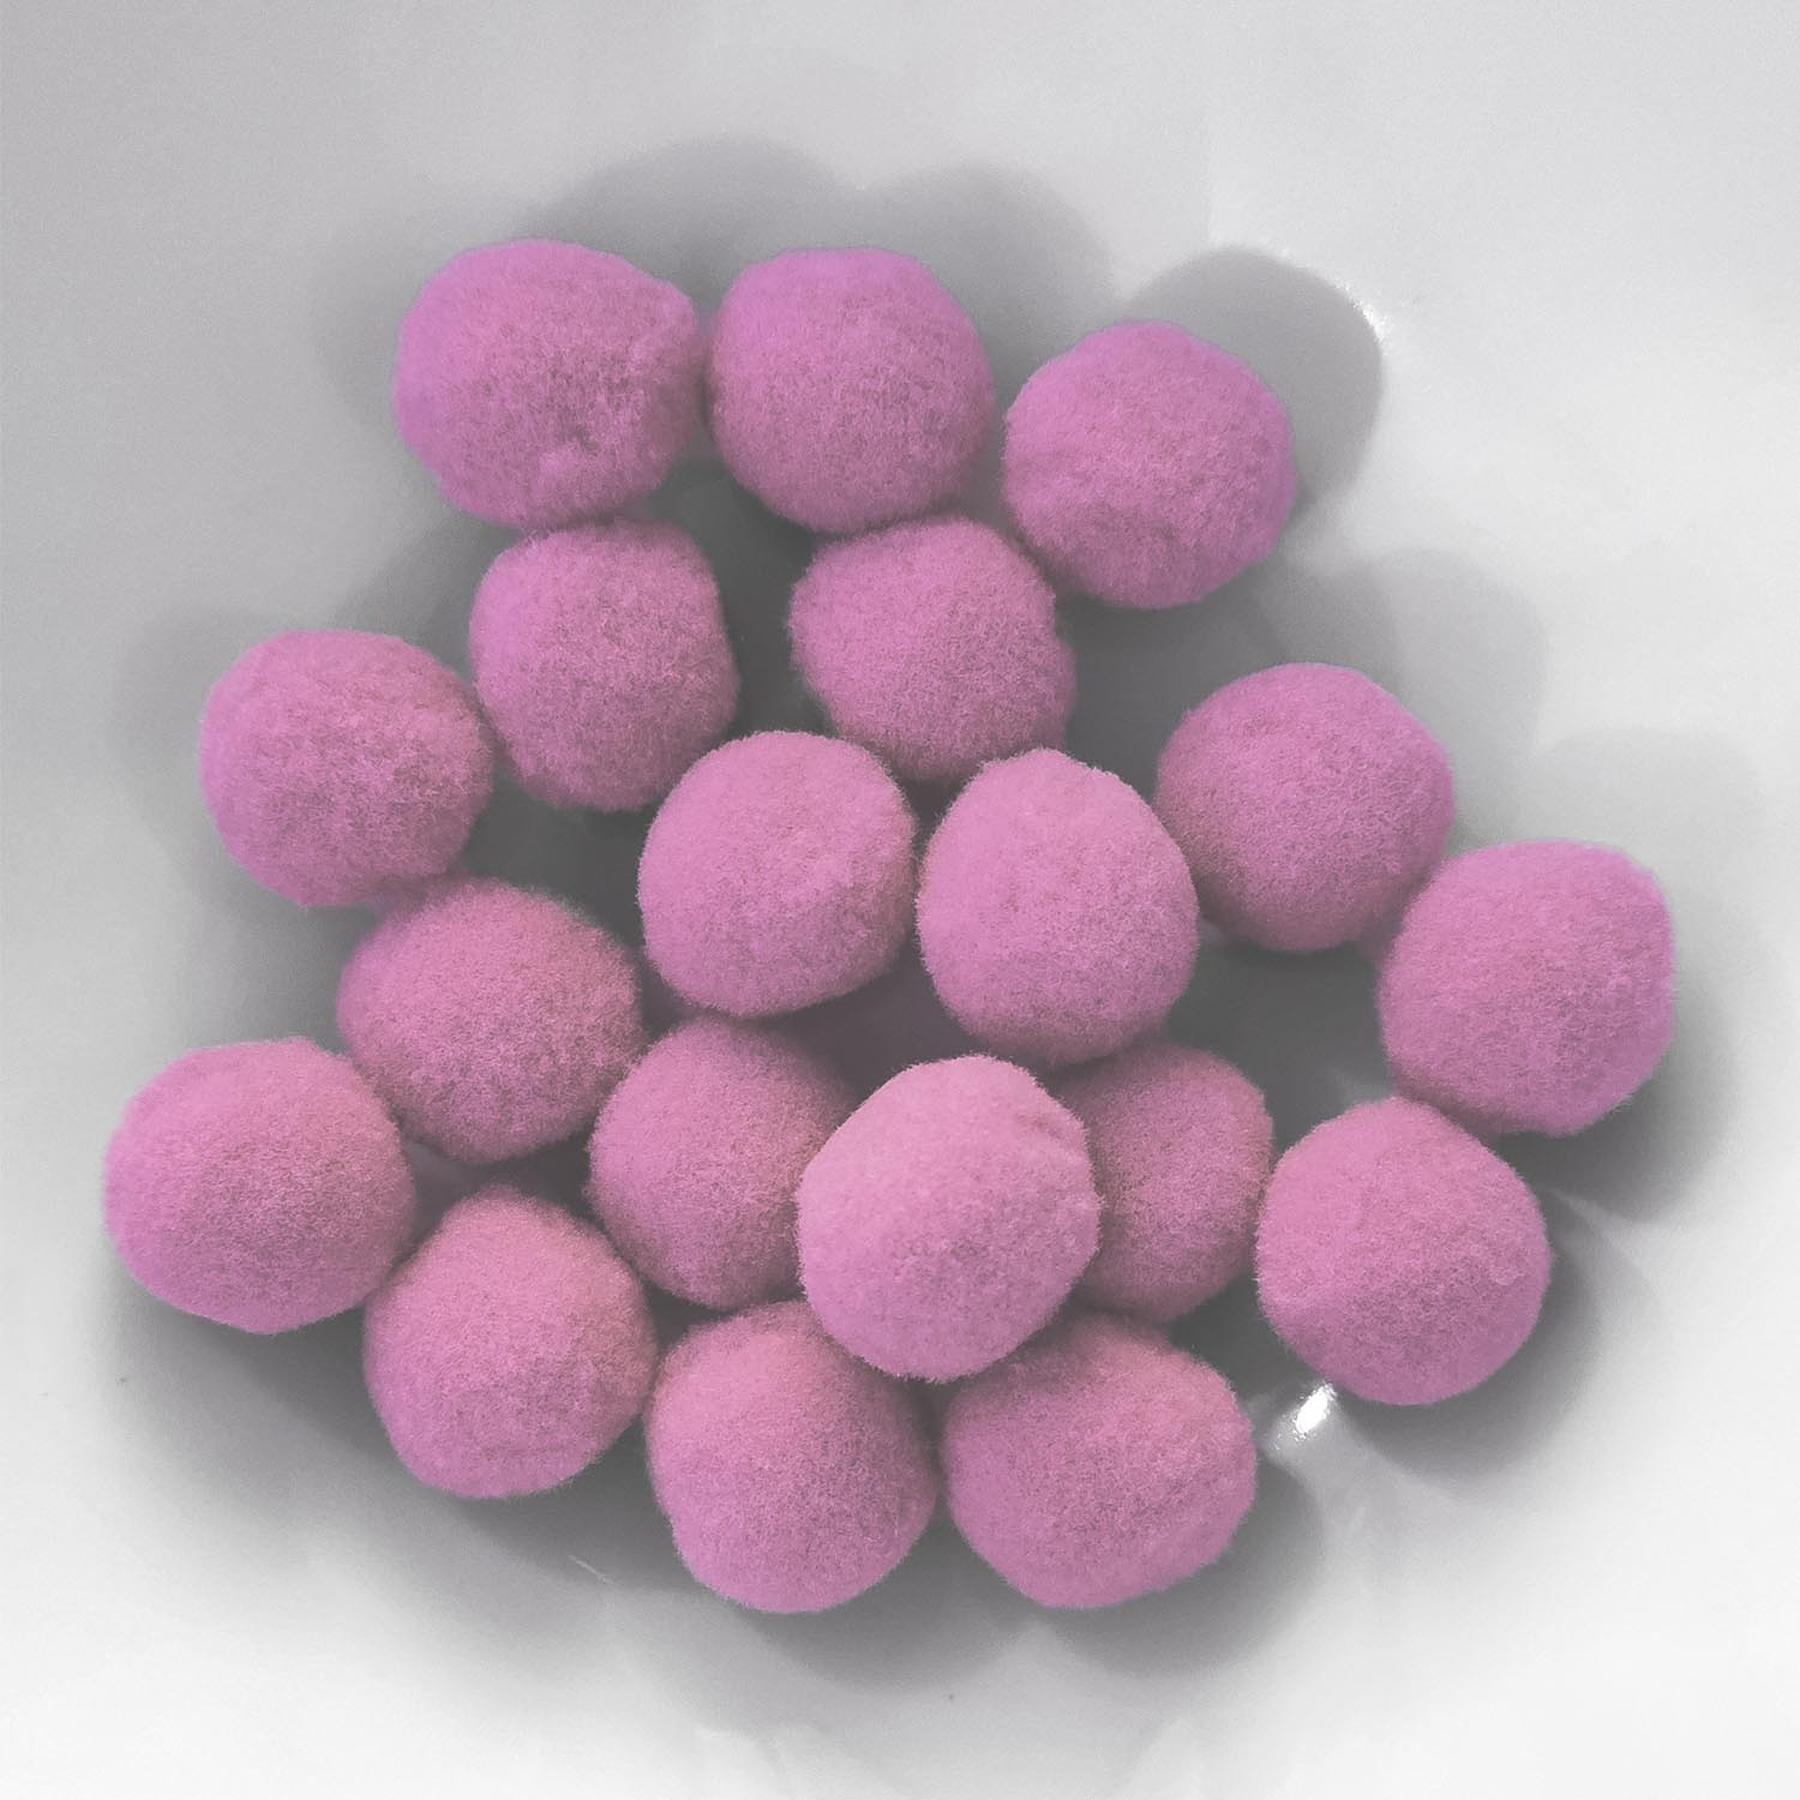 PomPon / Bälle aus Baumwolle - 12 mm / 40er Set - Rosa